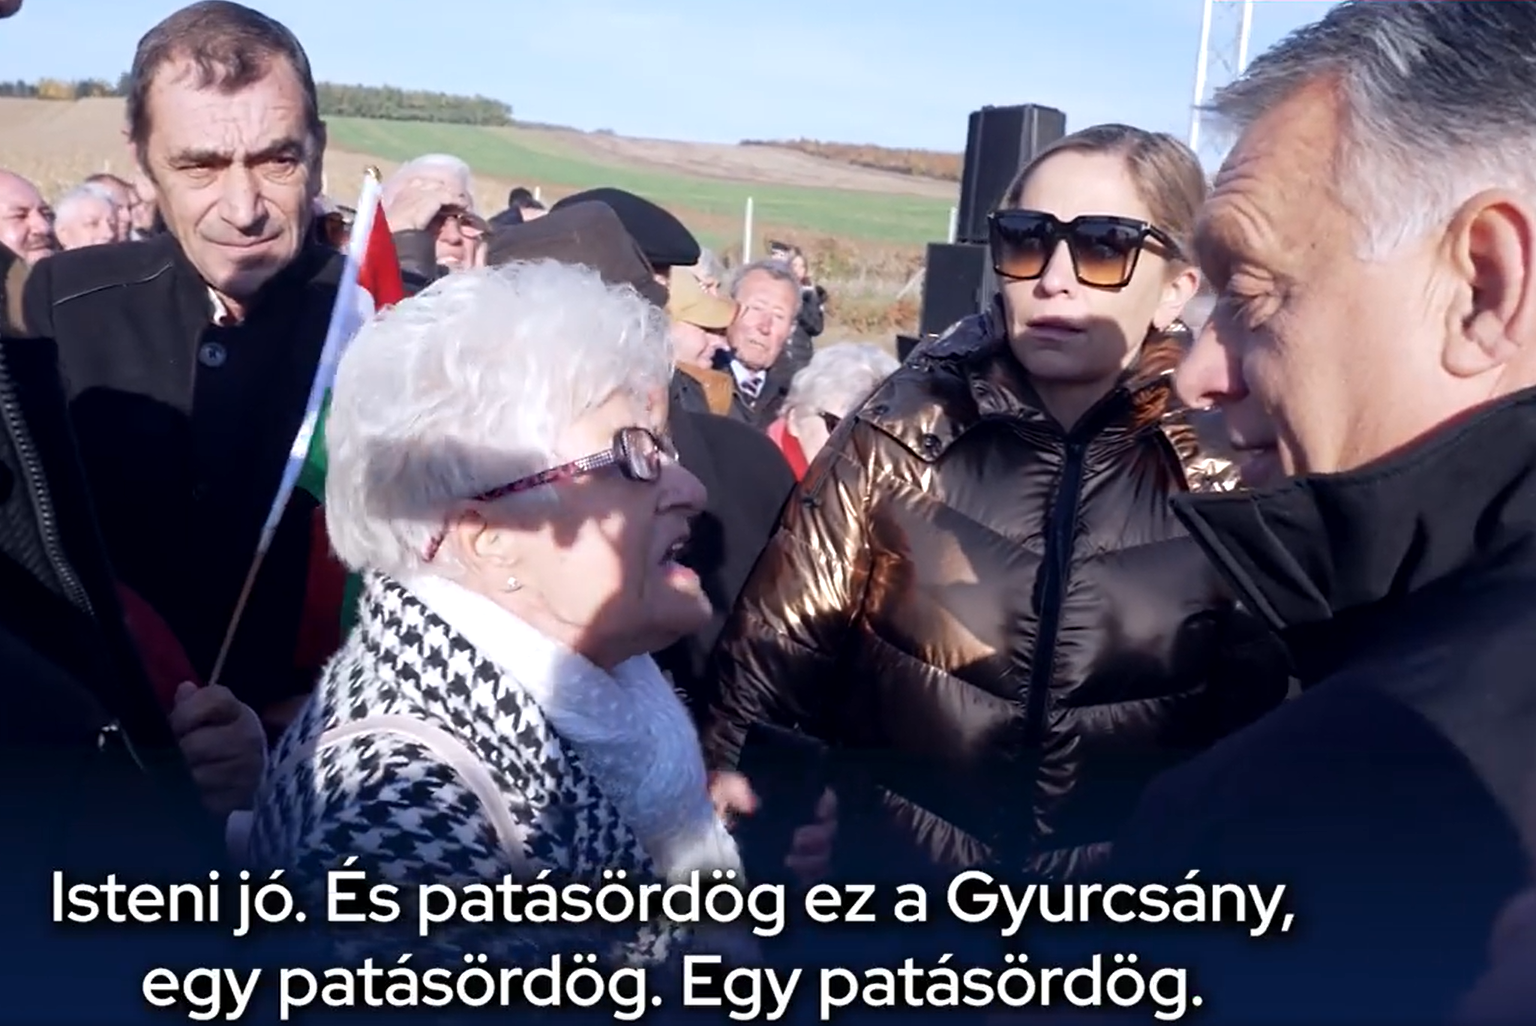 Nyugdíjas nő Orbánnak: Megnéztük az Elkúrtukat, patásördög ez a Gyurcsány